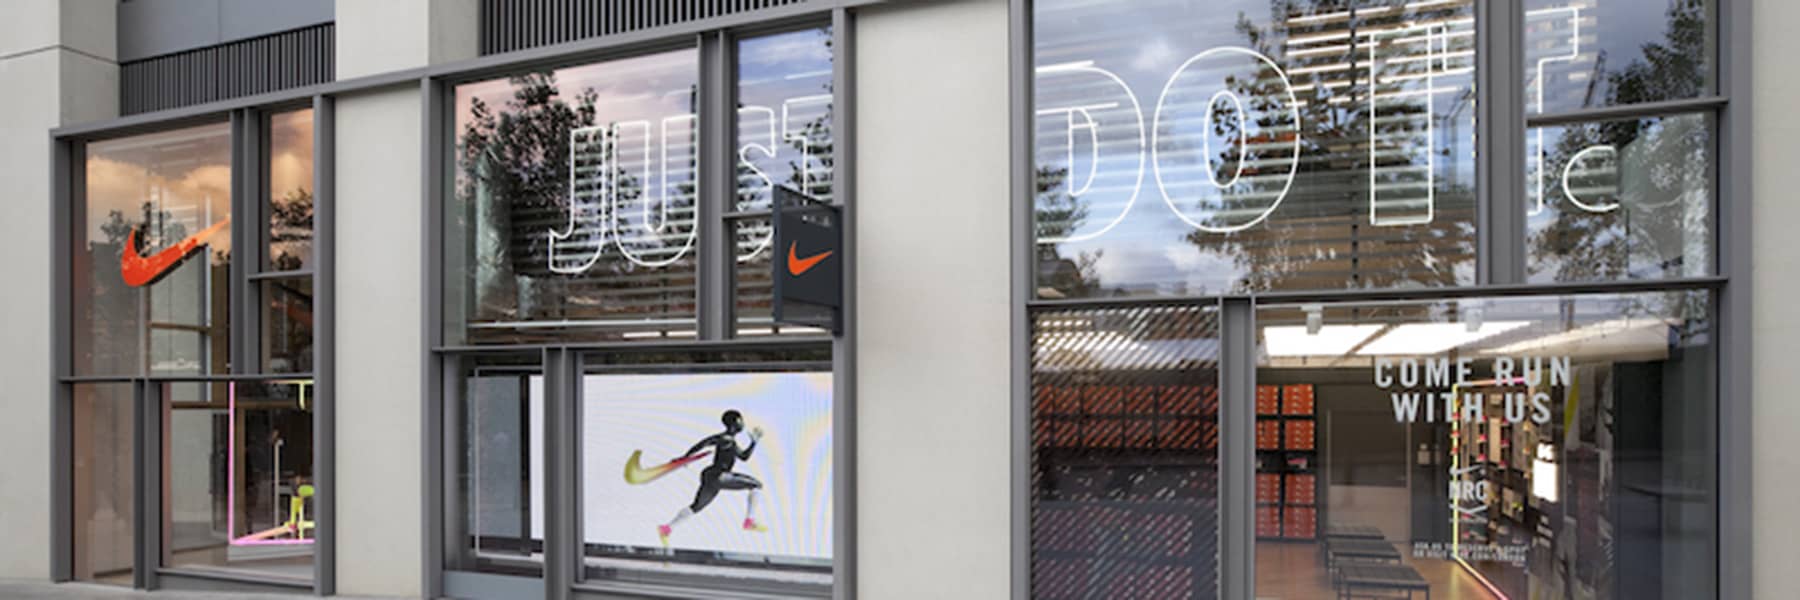 Retentie Geweldige eik Wegrijden Nike Hamburg. Hamburg, DEU. Nike.com DE